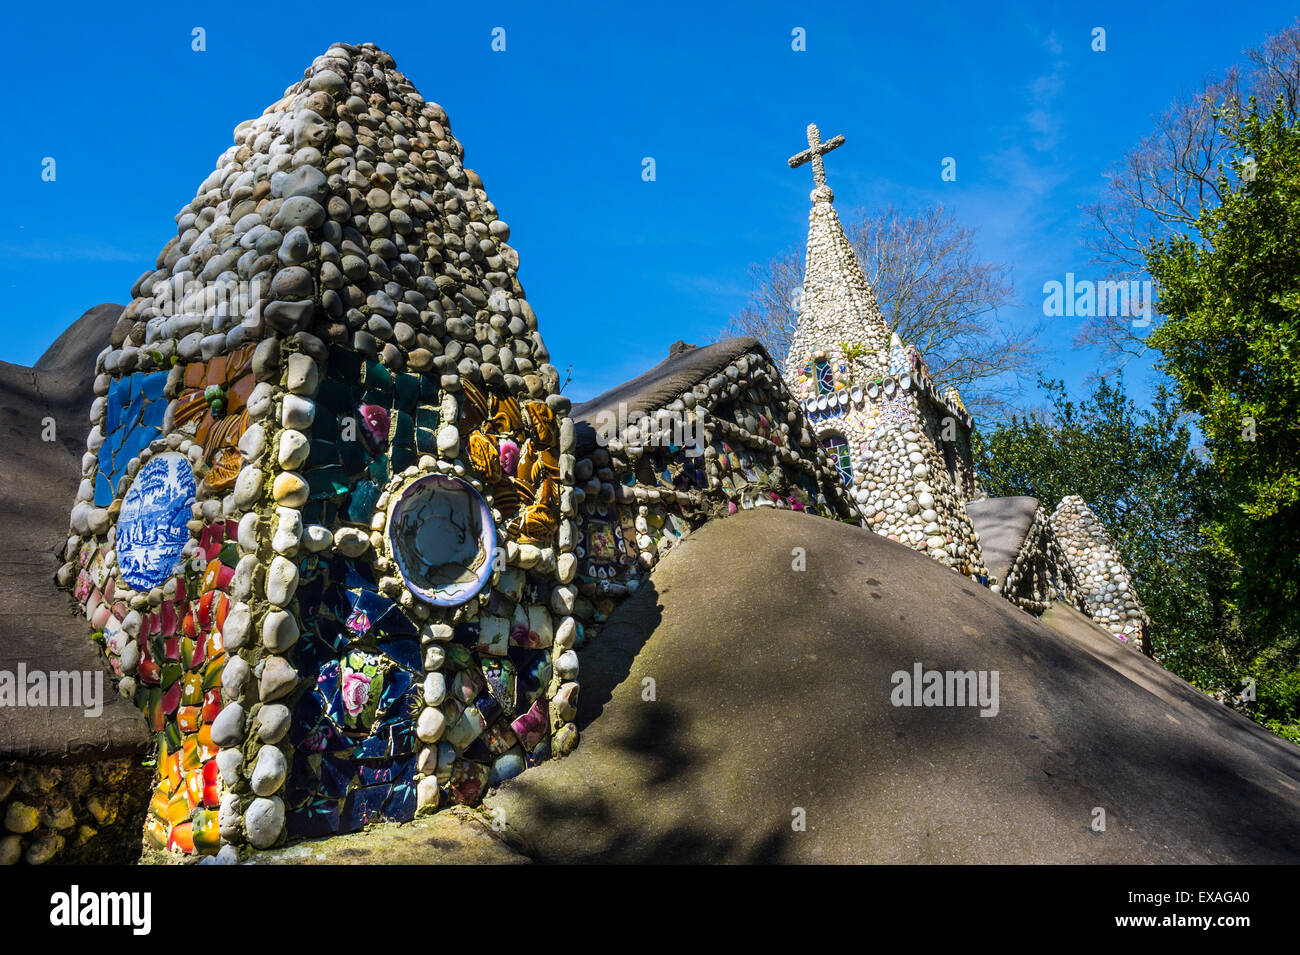 Wunderbar verziert, kleine Kapelle, Guernsey, Channel Islands, Vereinigte Königreich, Europa Stockfoto